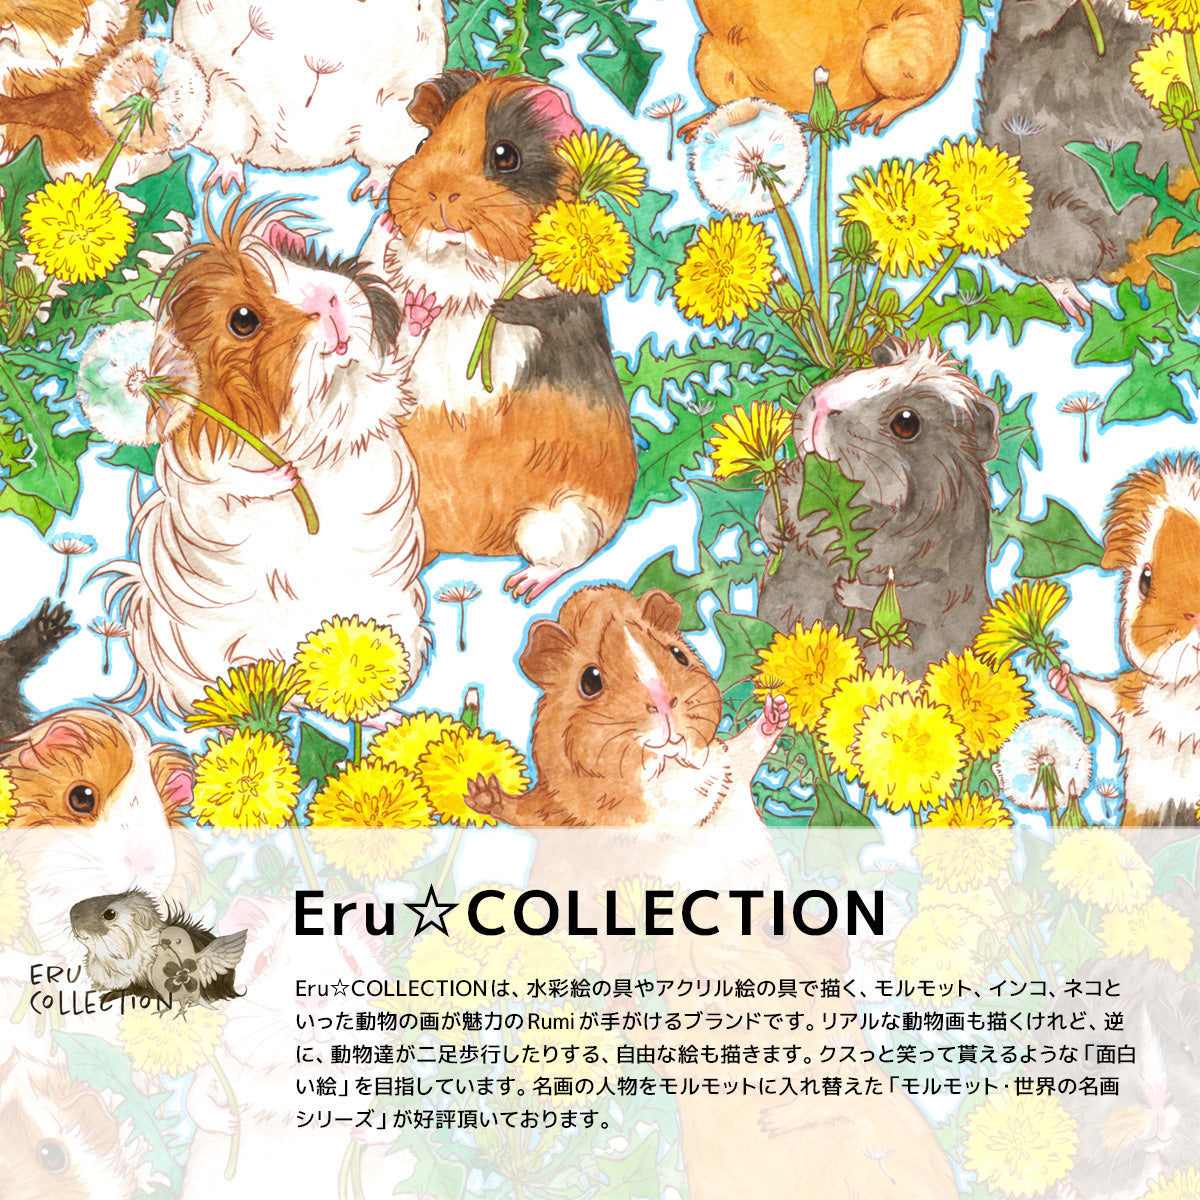 Rumiデザイン、ERu☆COLLECTIONブランドのアートポスター